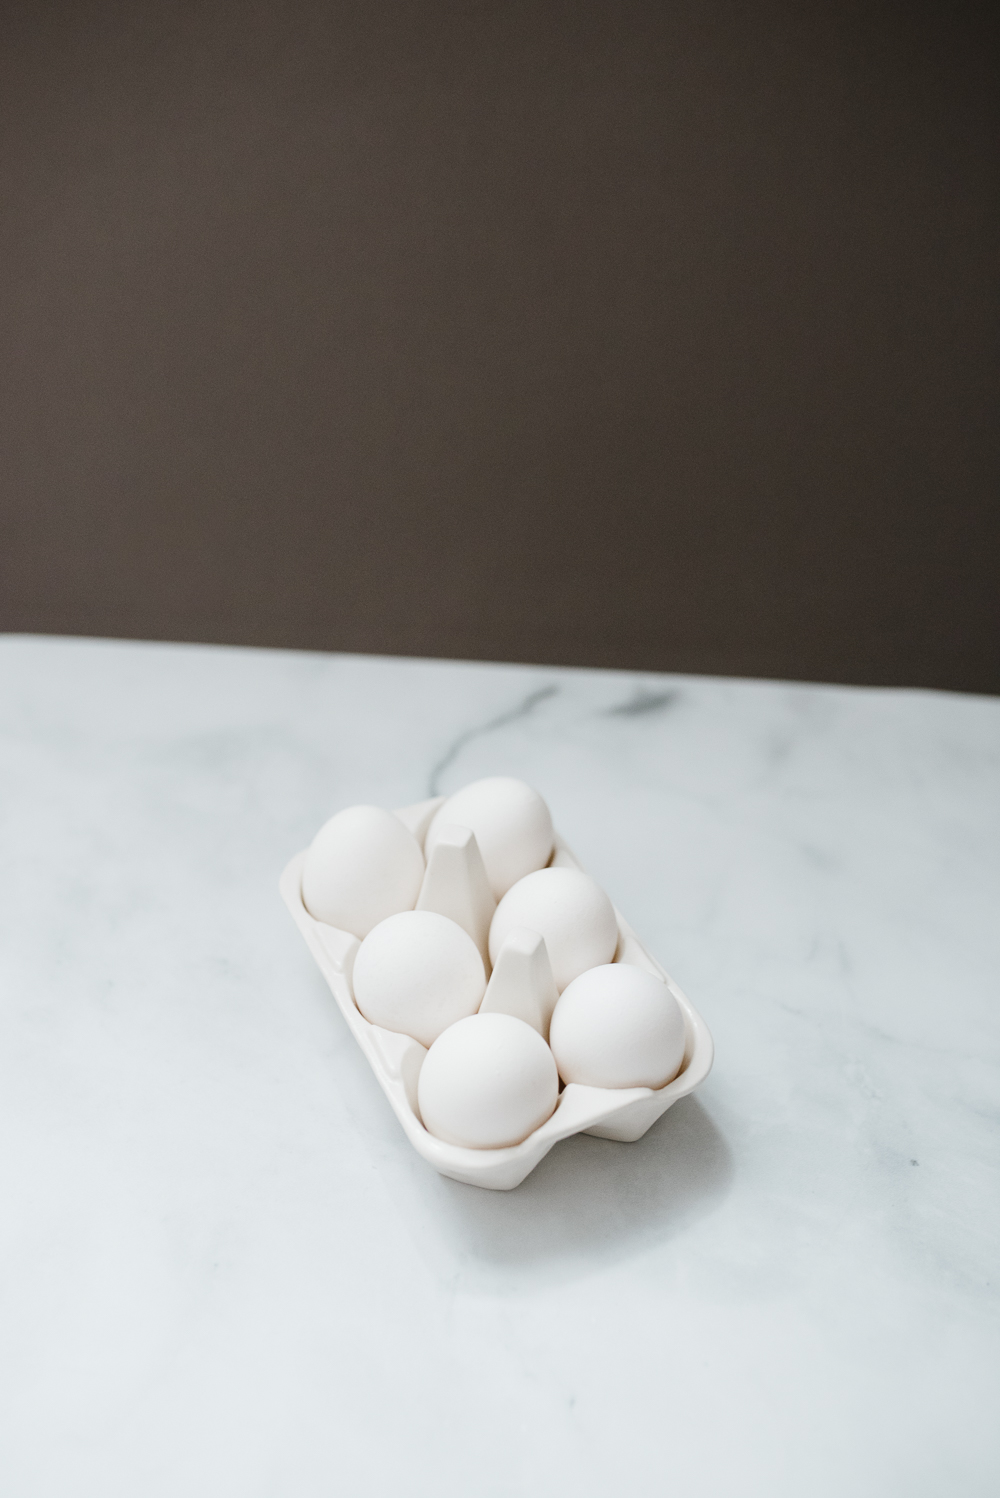 ceramic egg carton